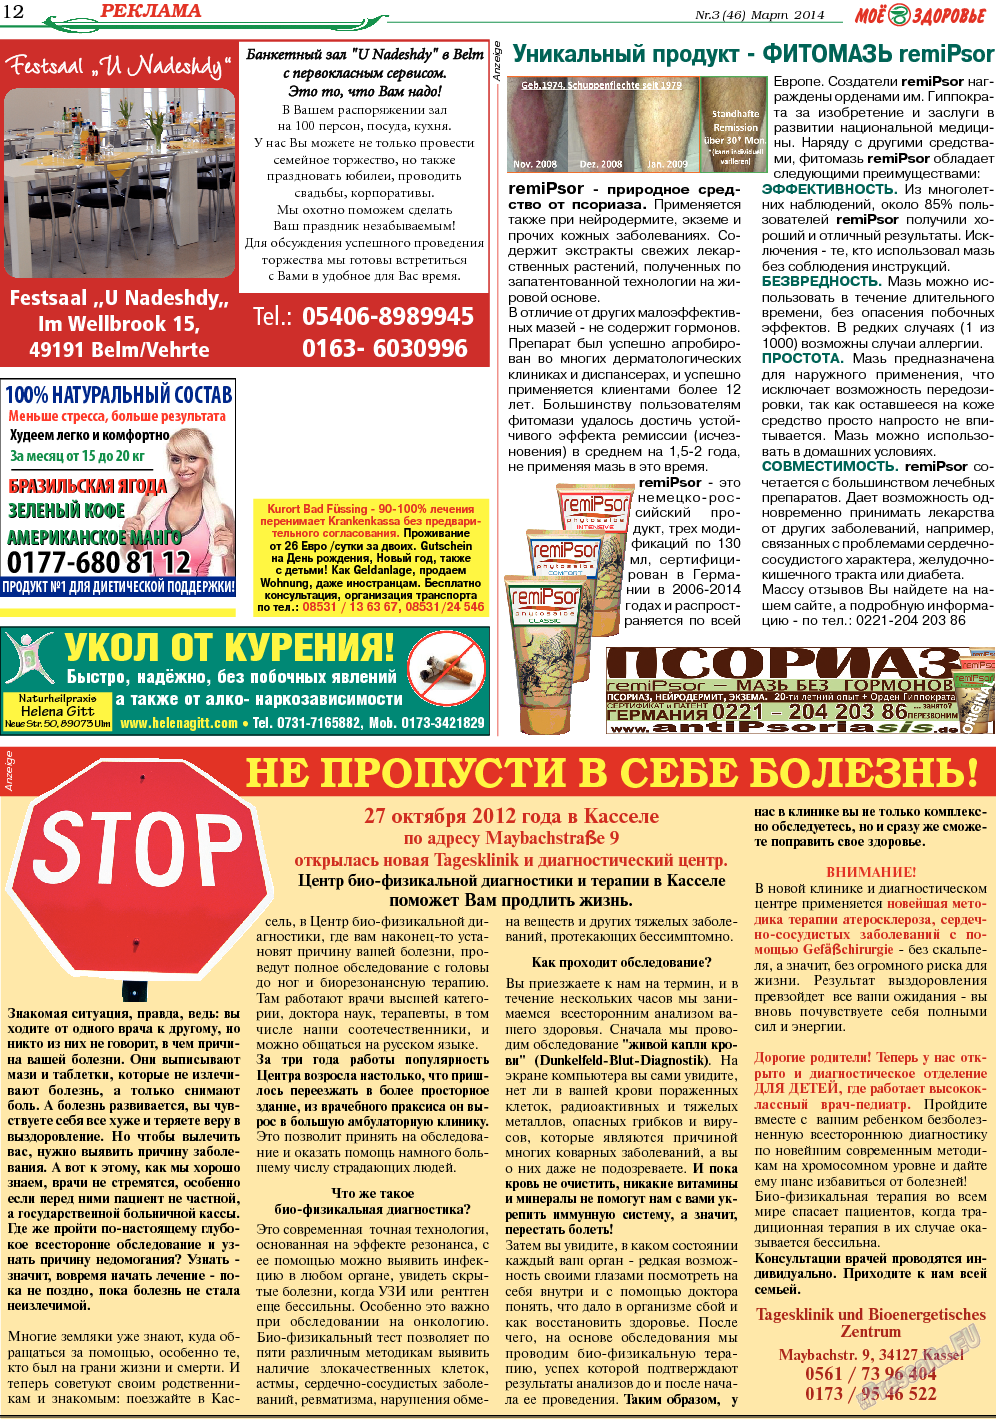 Кругозор, газета. 2014 №3 стр.12